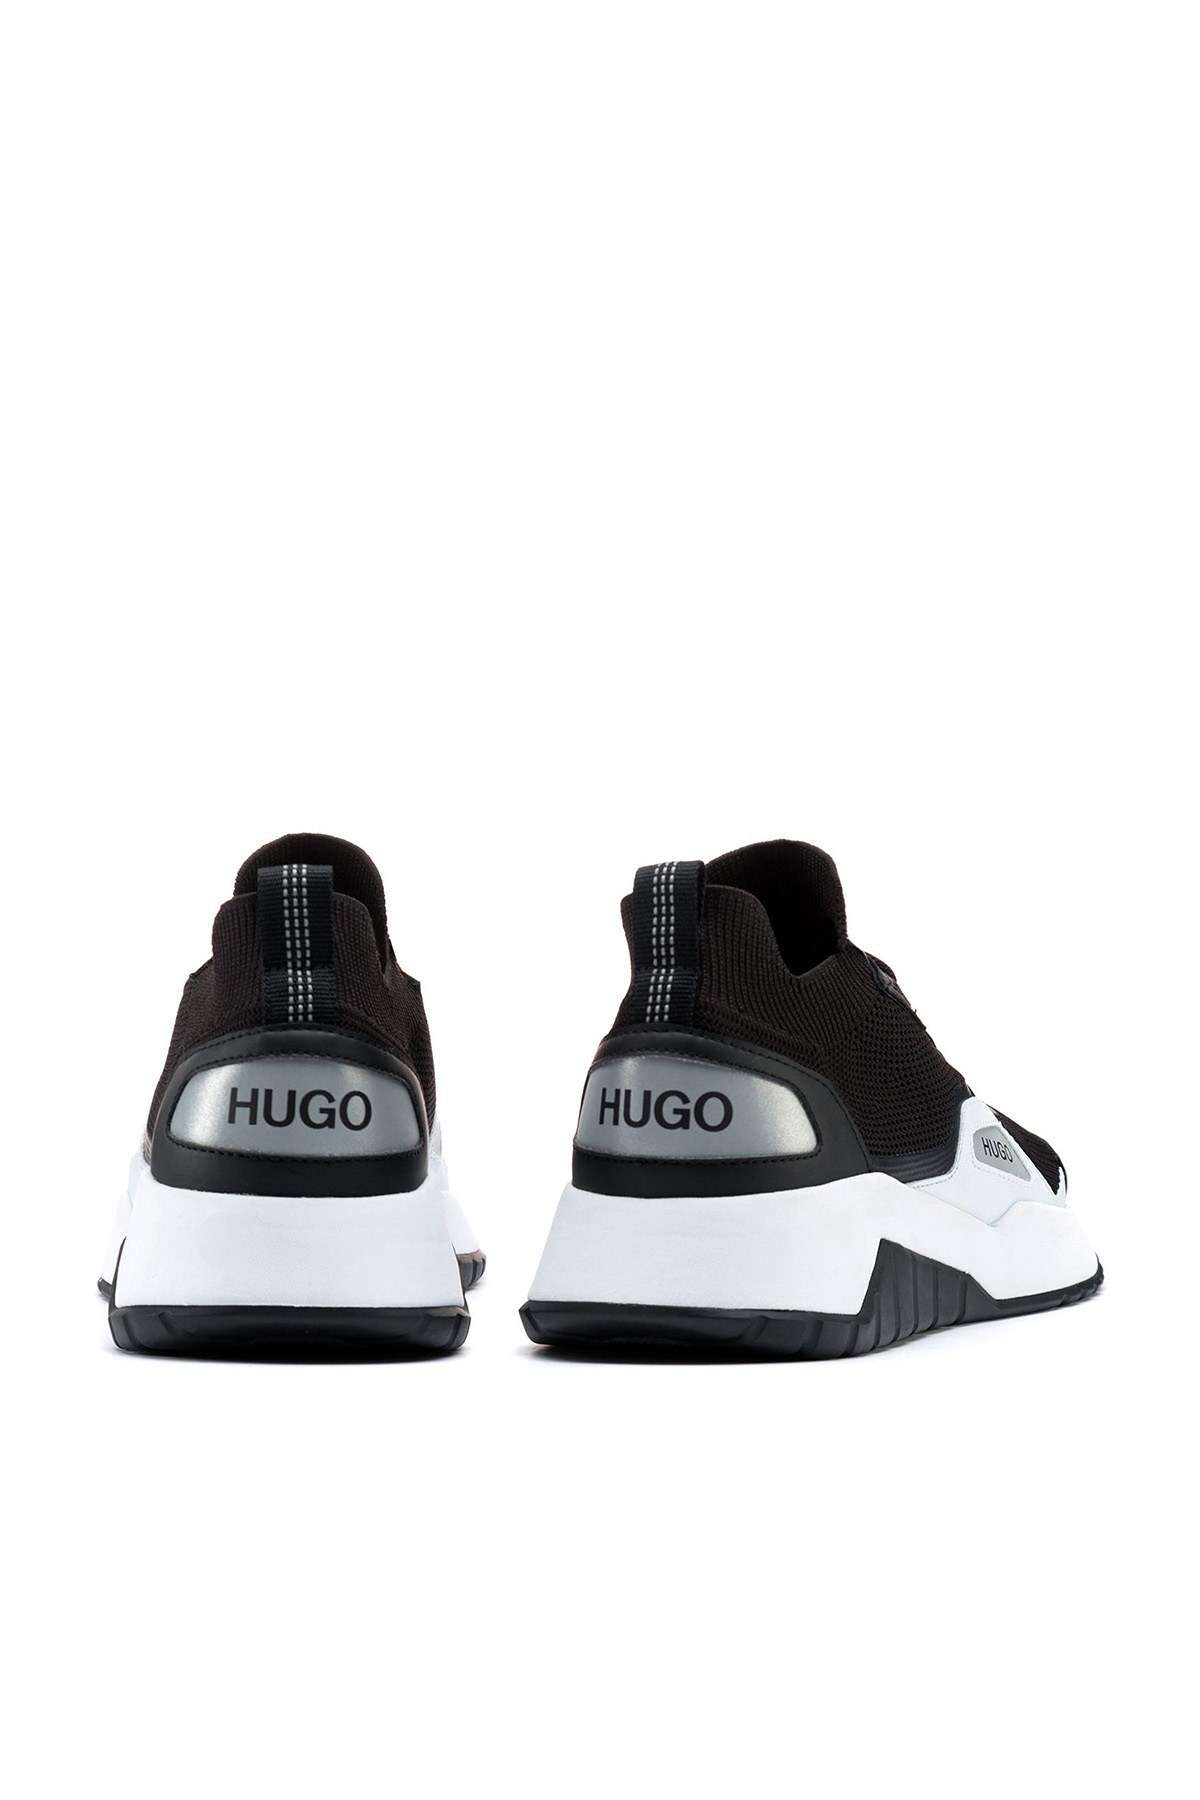 Hugo Boss Günlük Spor Erkek Ayakkabı 50451655 001 SİYAH